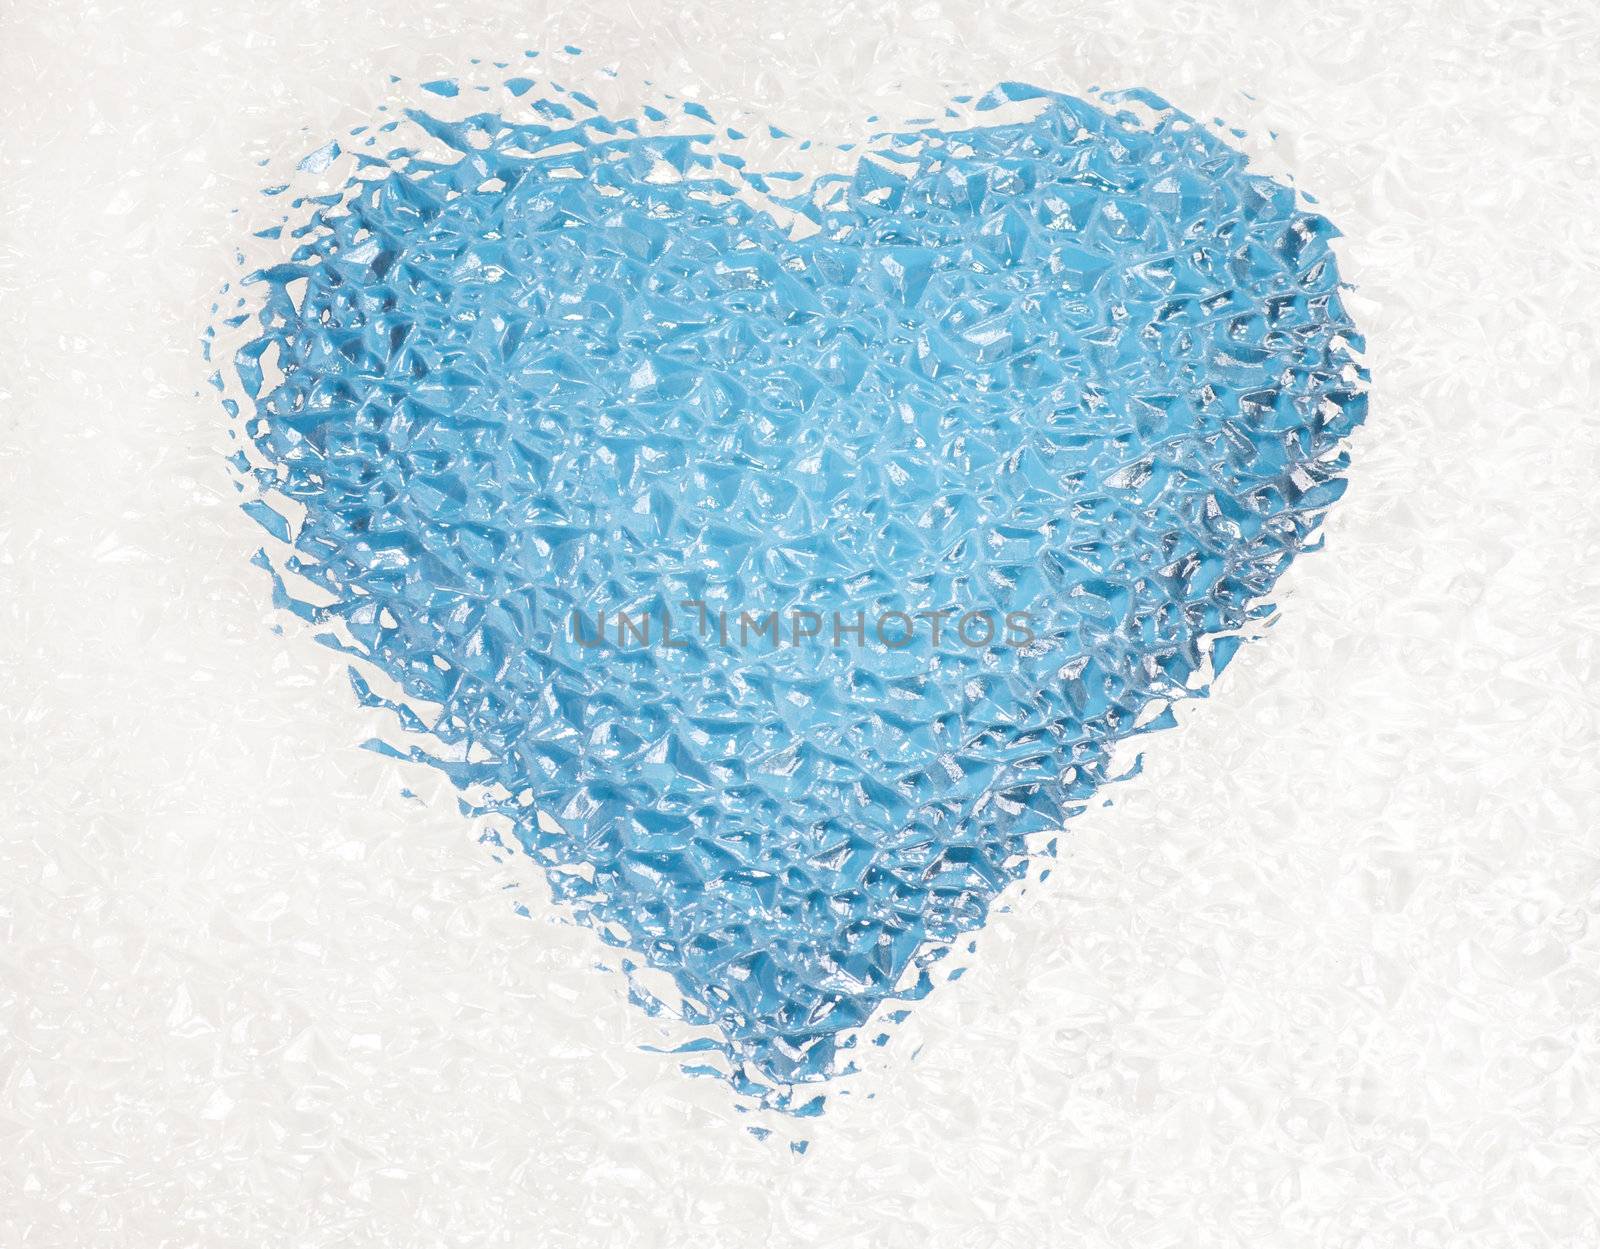 frozen deep blue heart by MikeNG